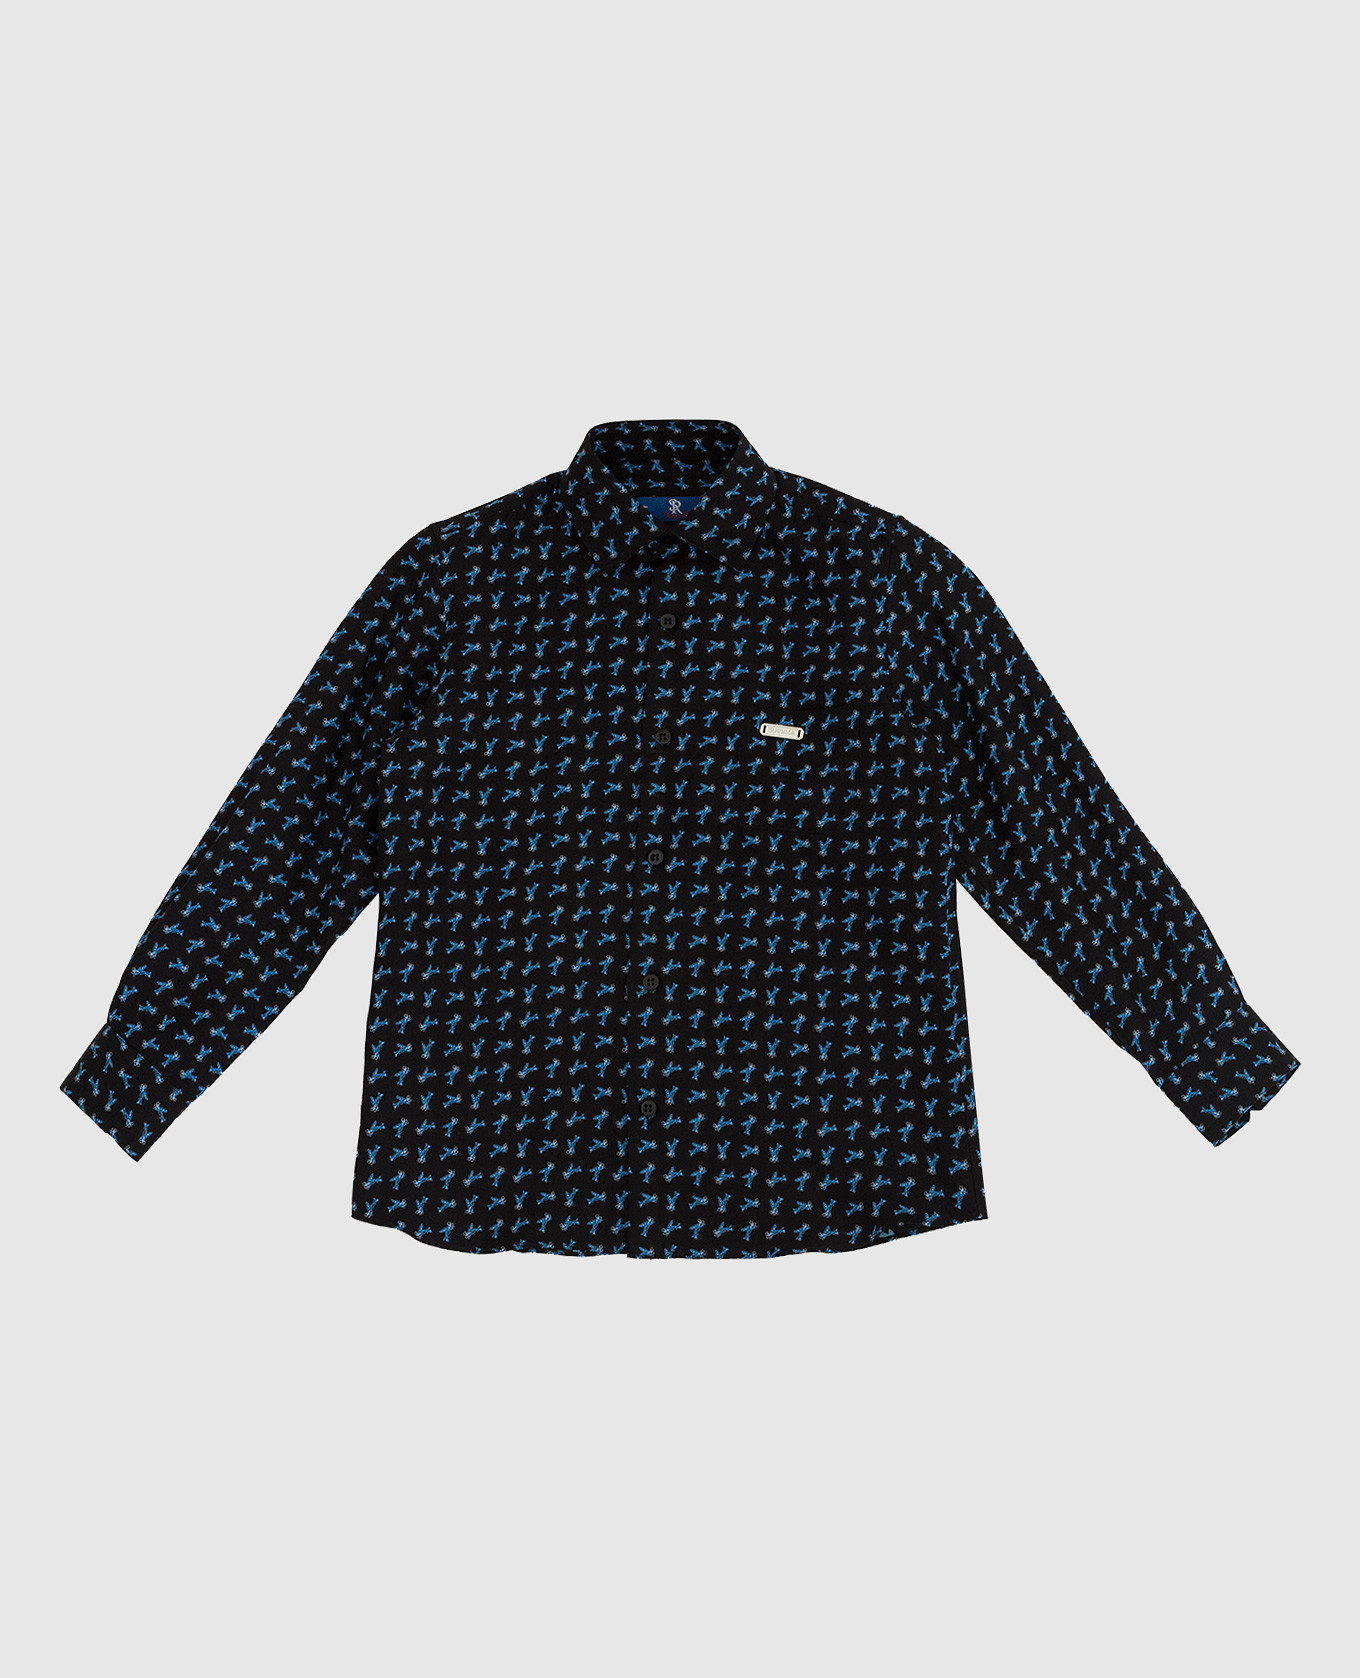 Children's silk shirt in a pattern